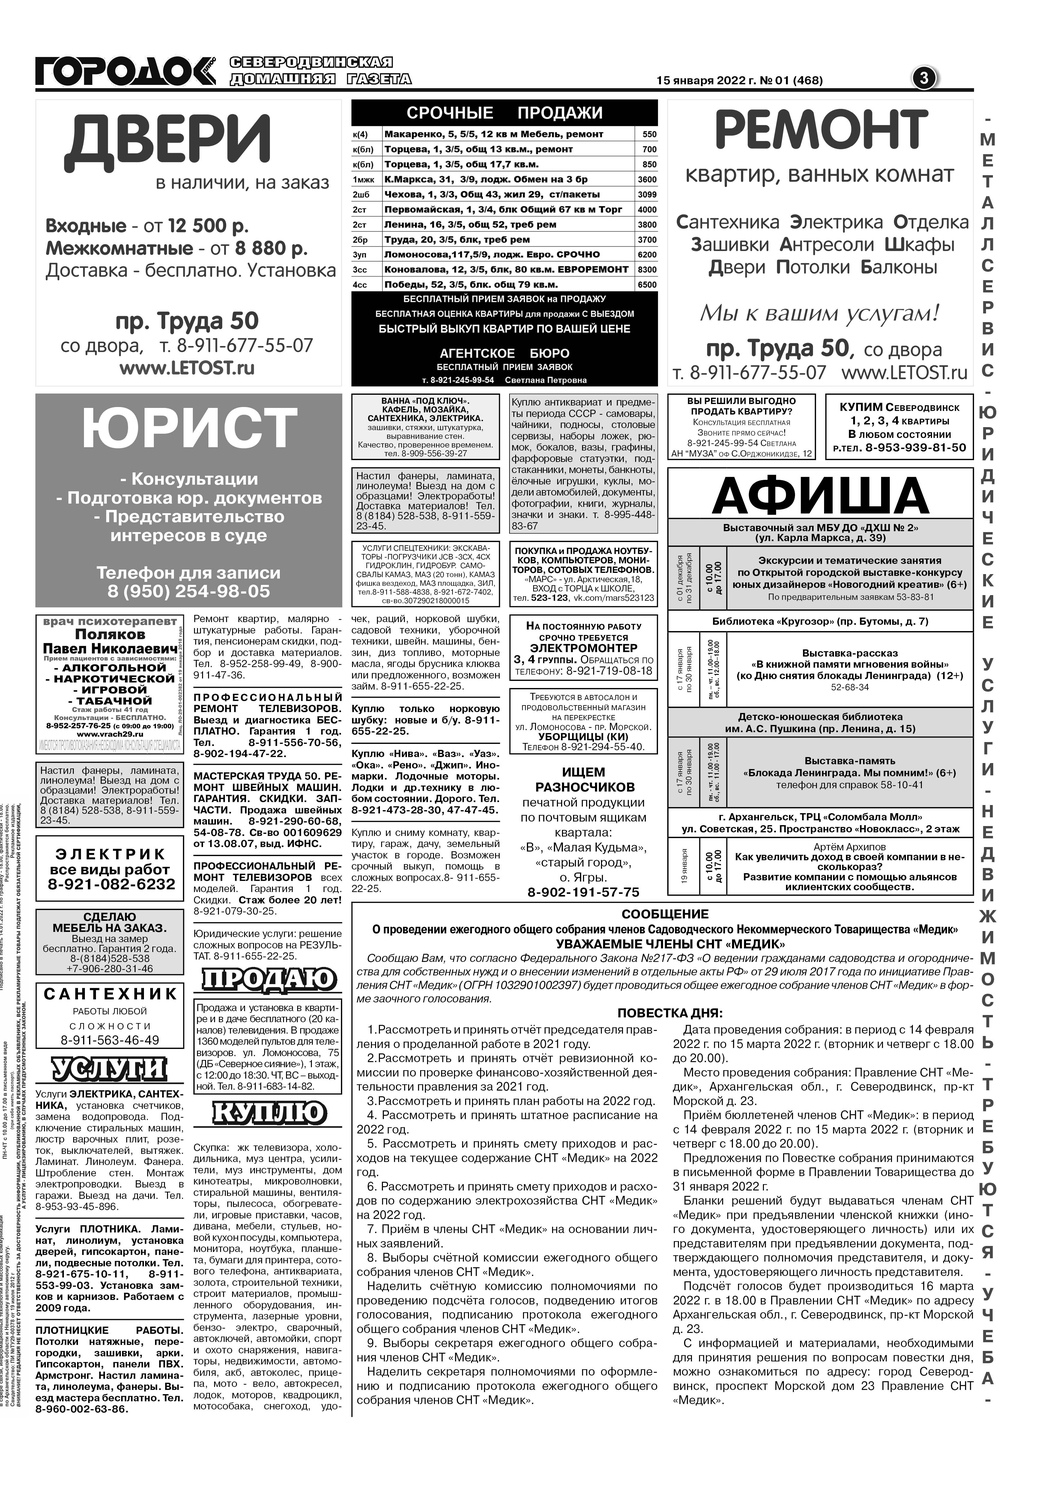 Газета Городок Плюс №1, страница 3, 15 января 2022.